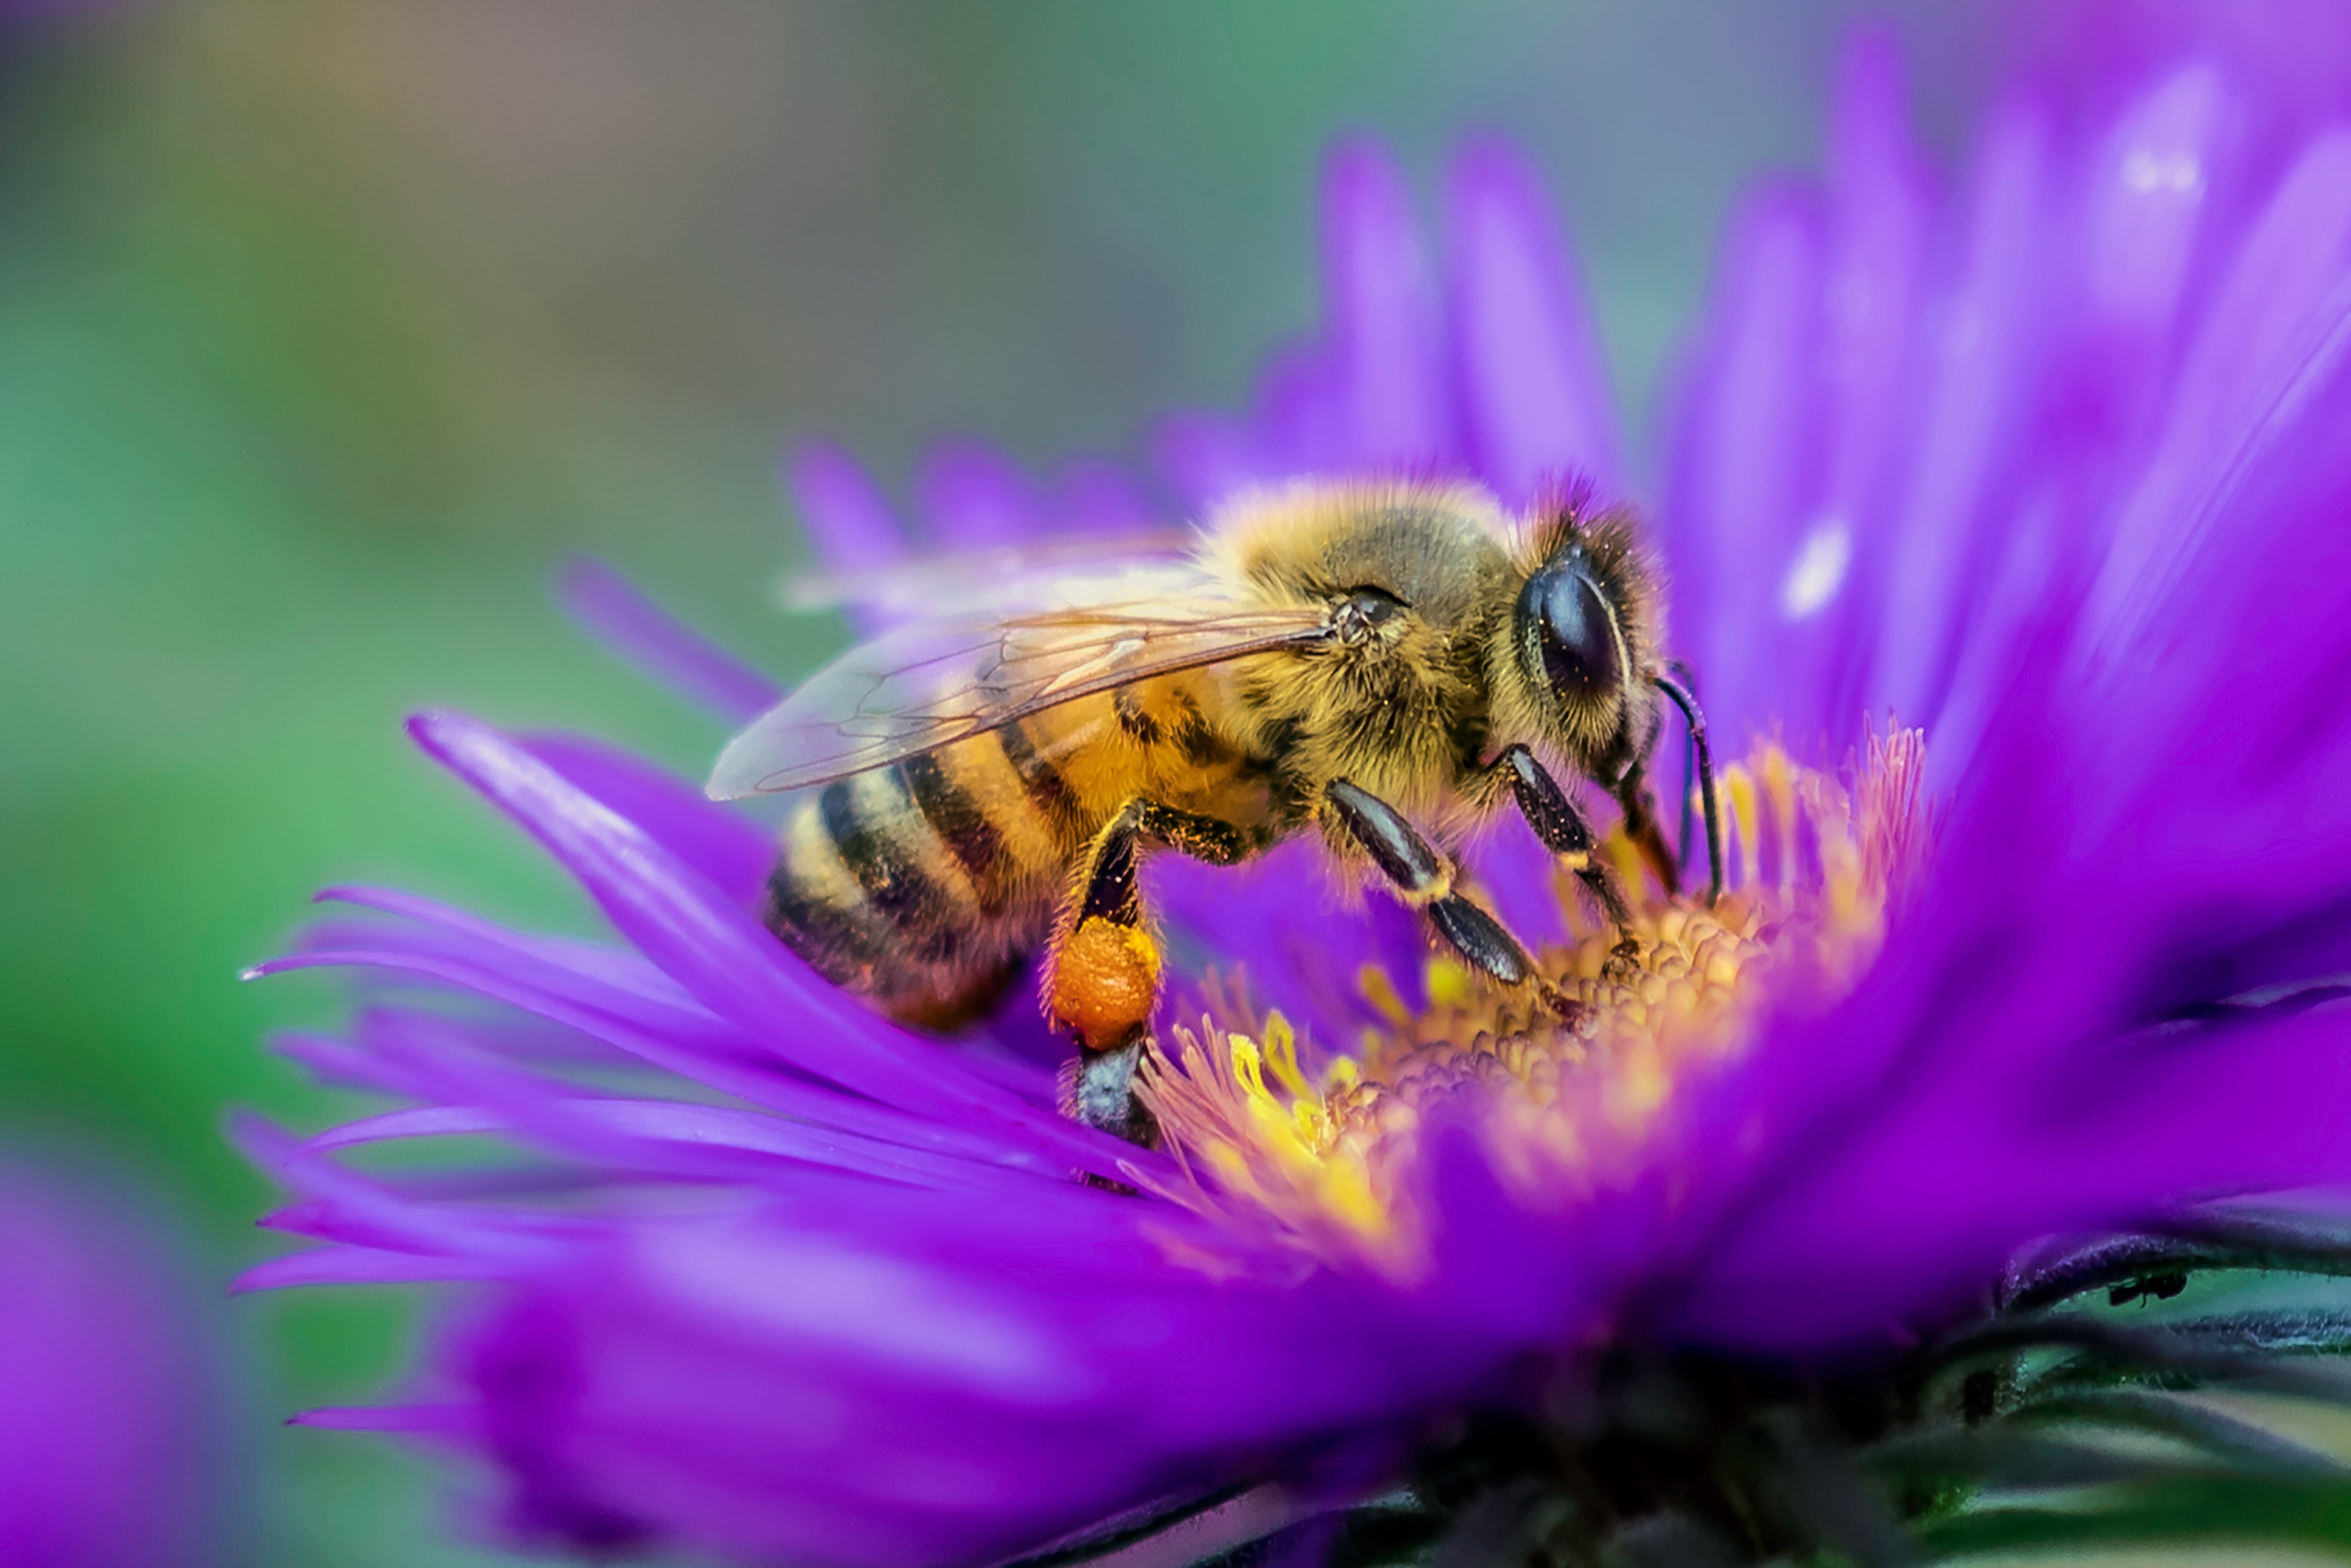 A Honey Bee on a purple flower.